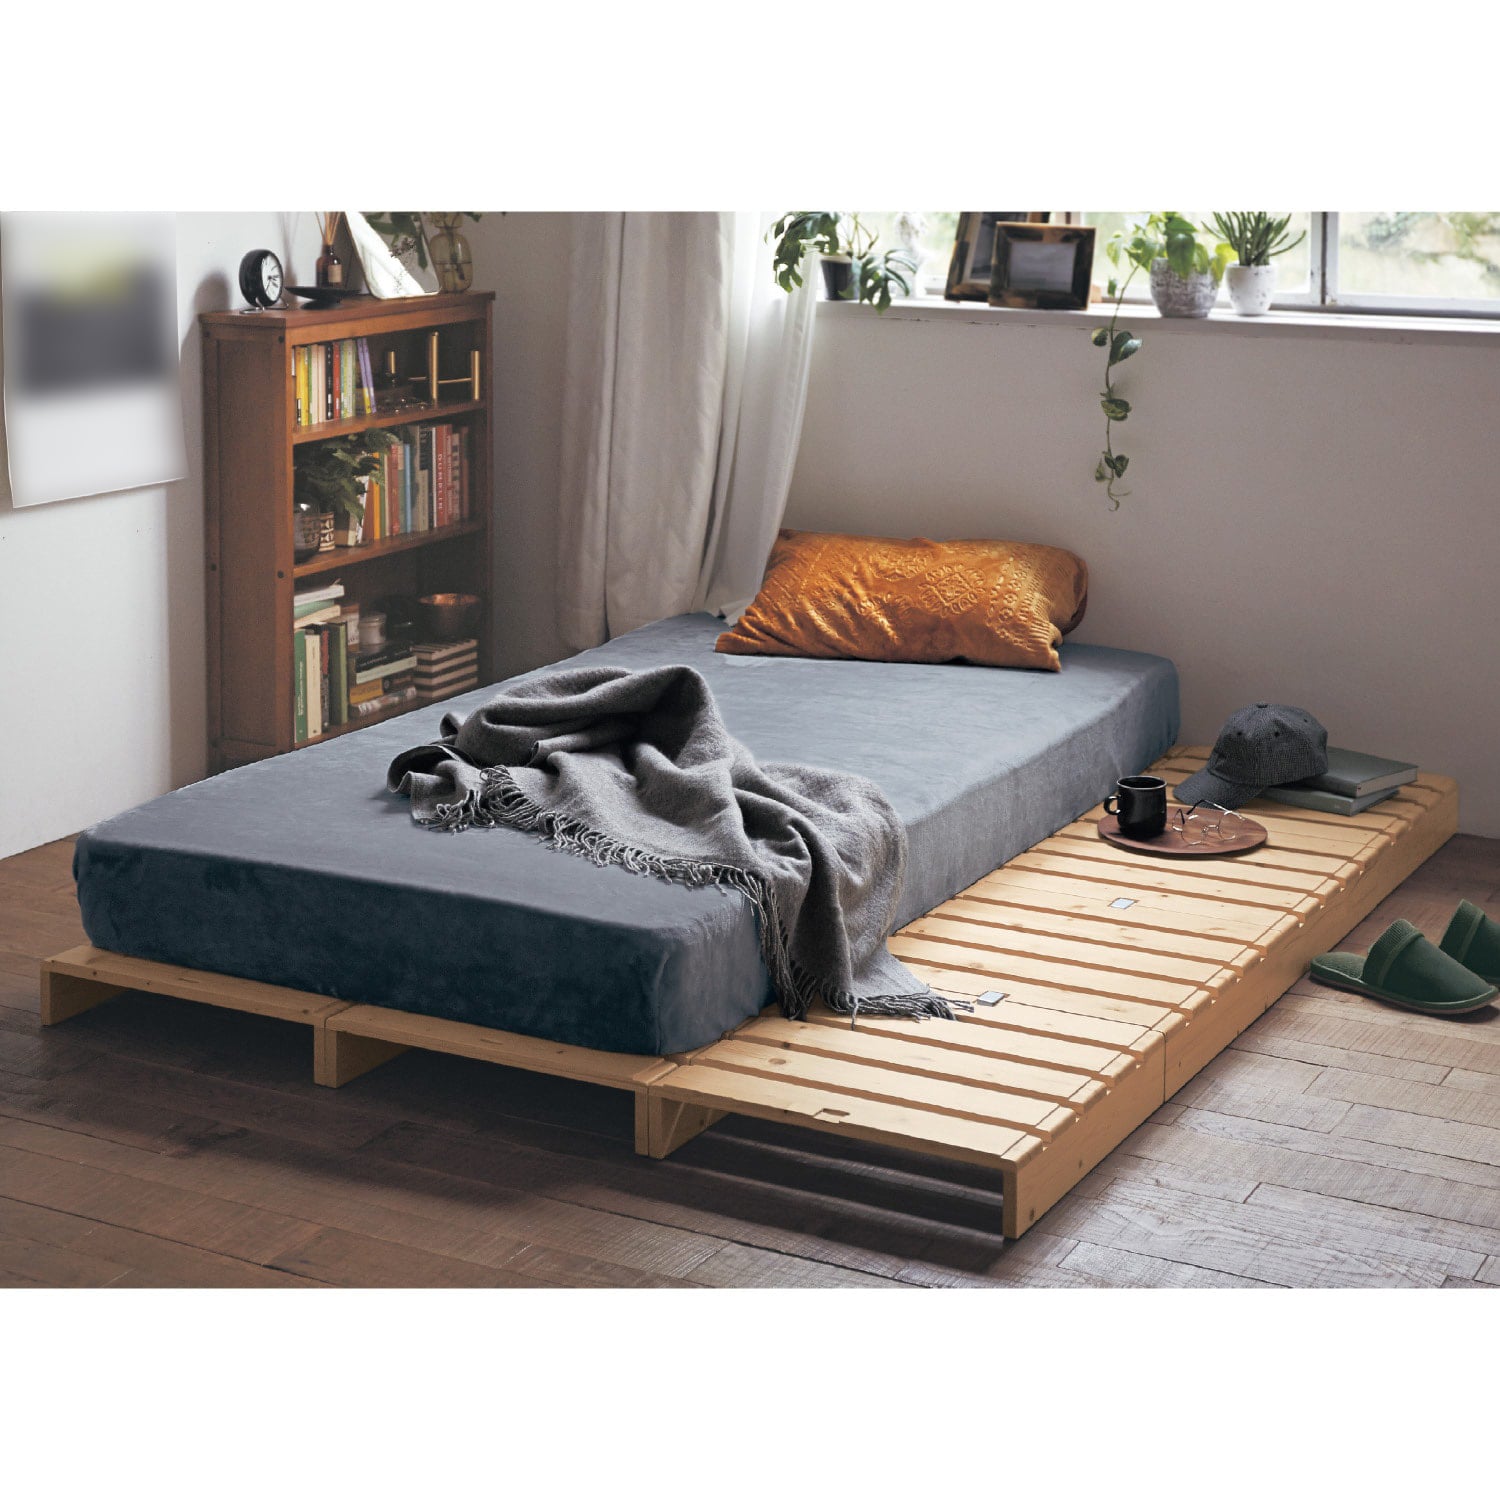 ベッド ベルメゾン 簡単に組み替えられるパレット風ベッド ナチュラル